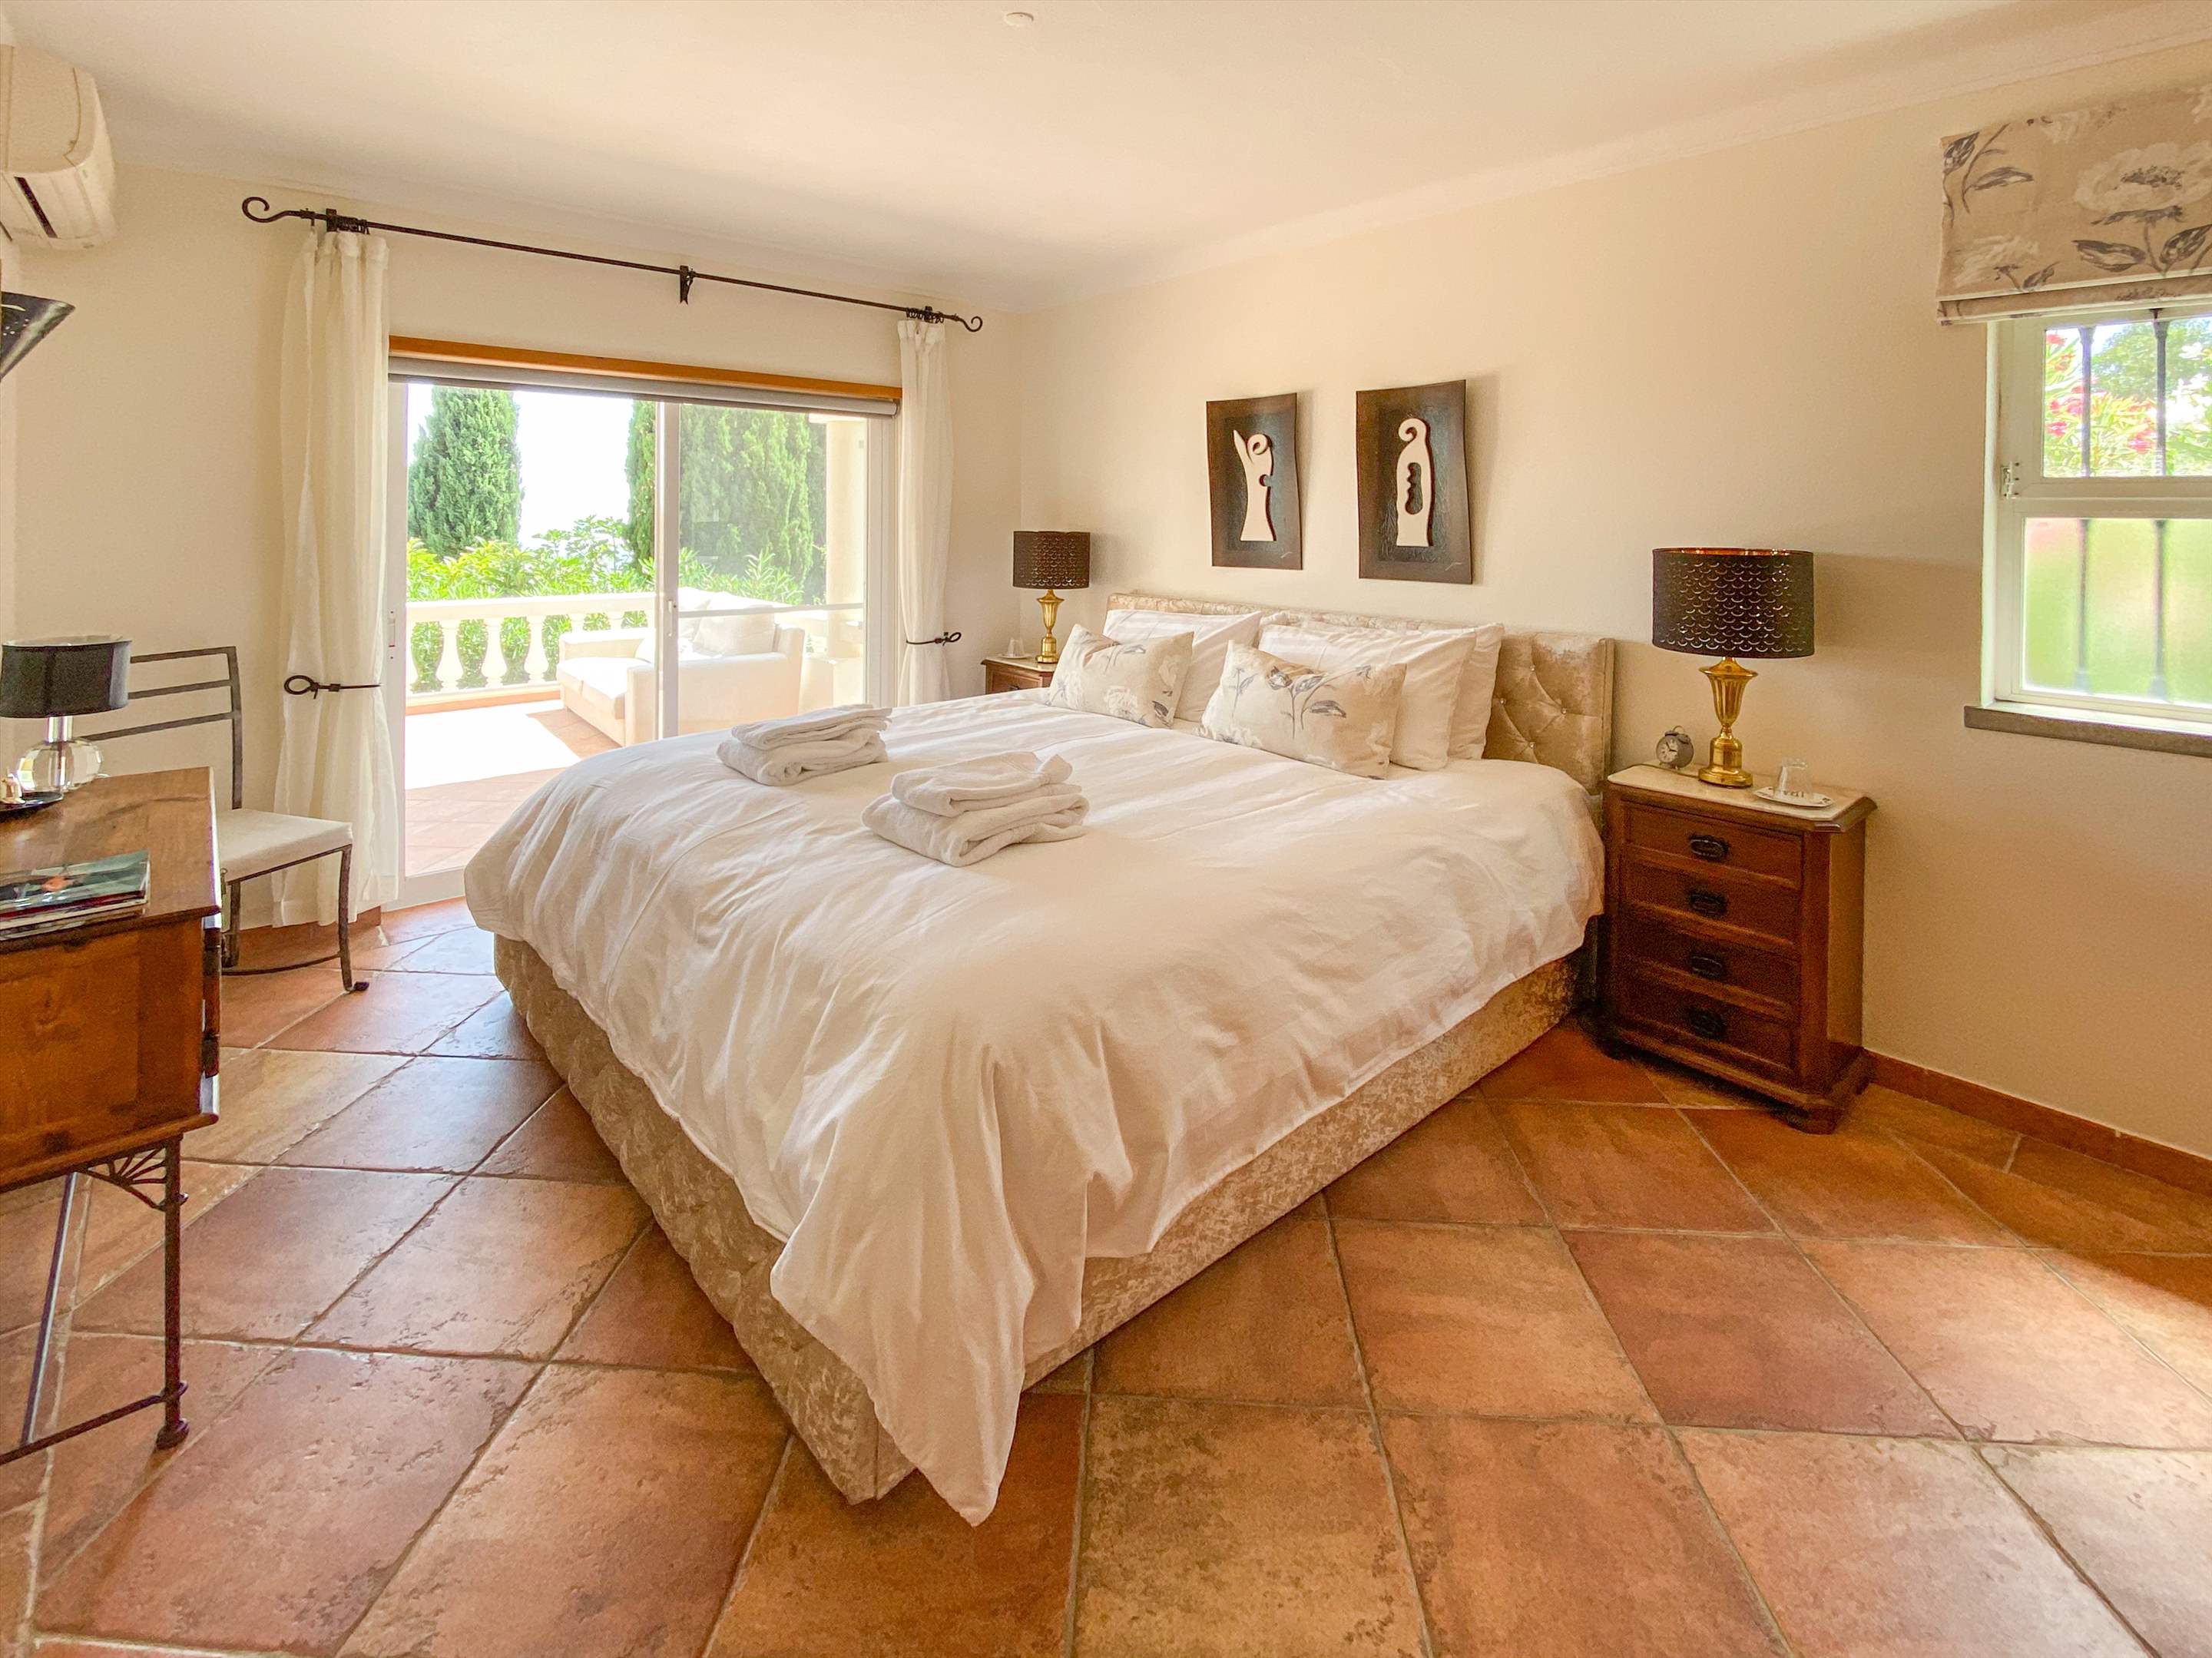 Villa Netuno, 12 Persons Rate, 2 extra persons on sofa bed, 5 bedroom villa in Algarve Countryside, Algarve Photo #29